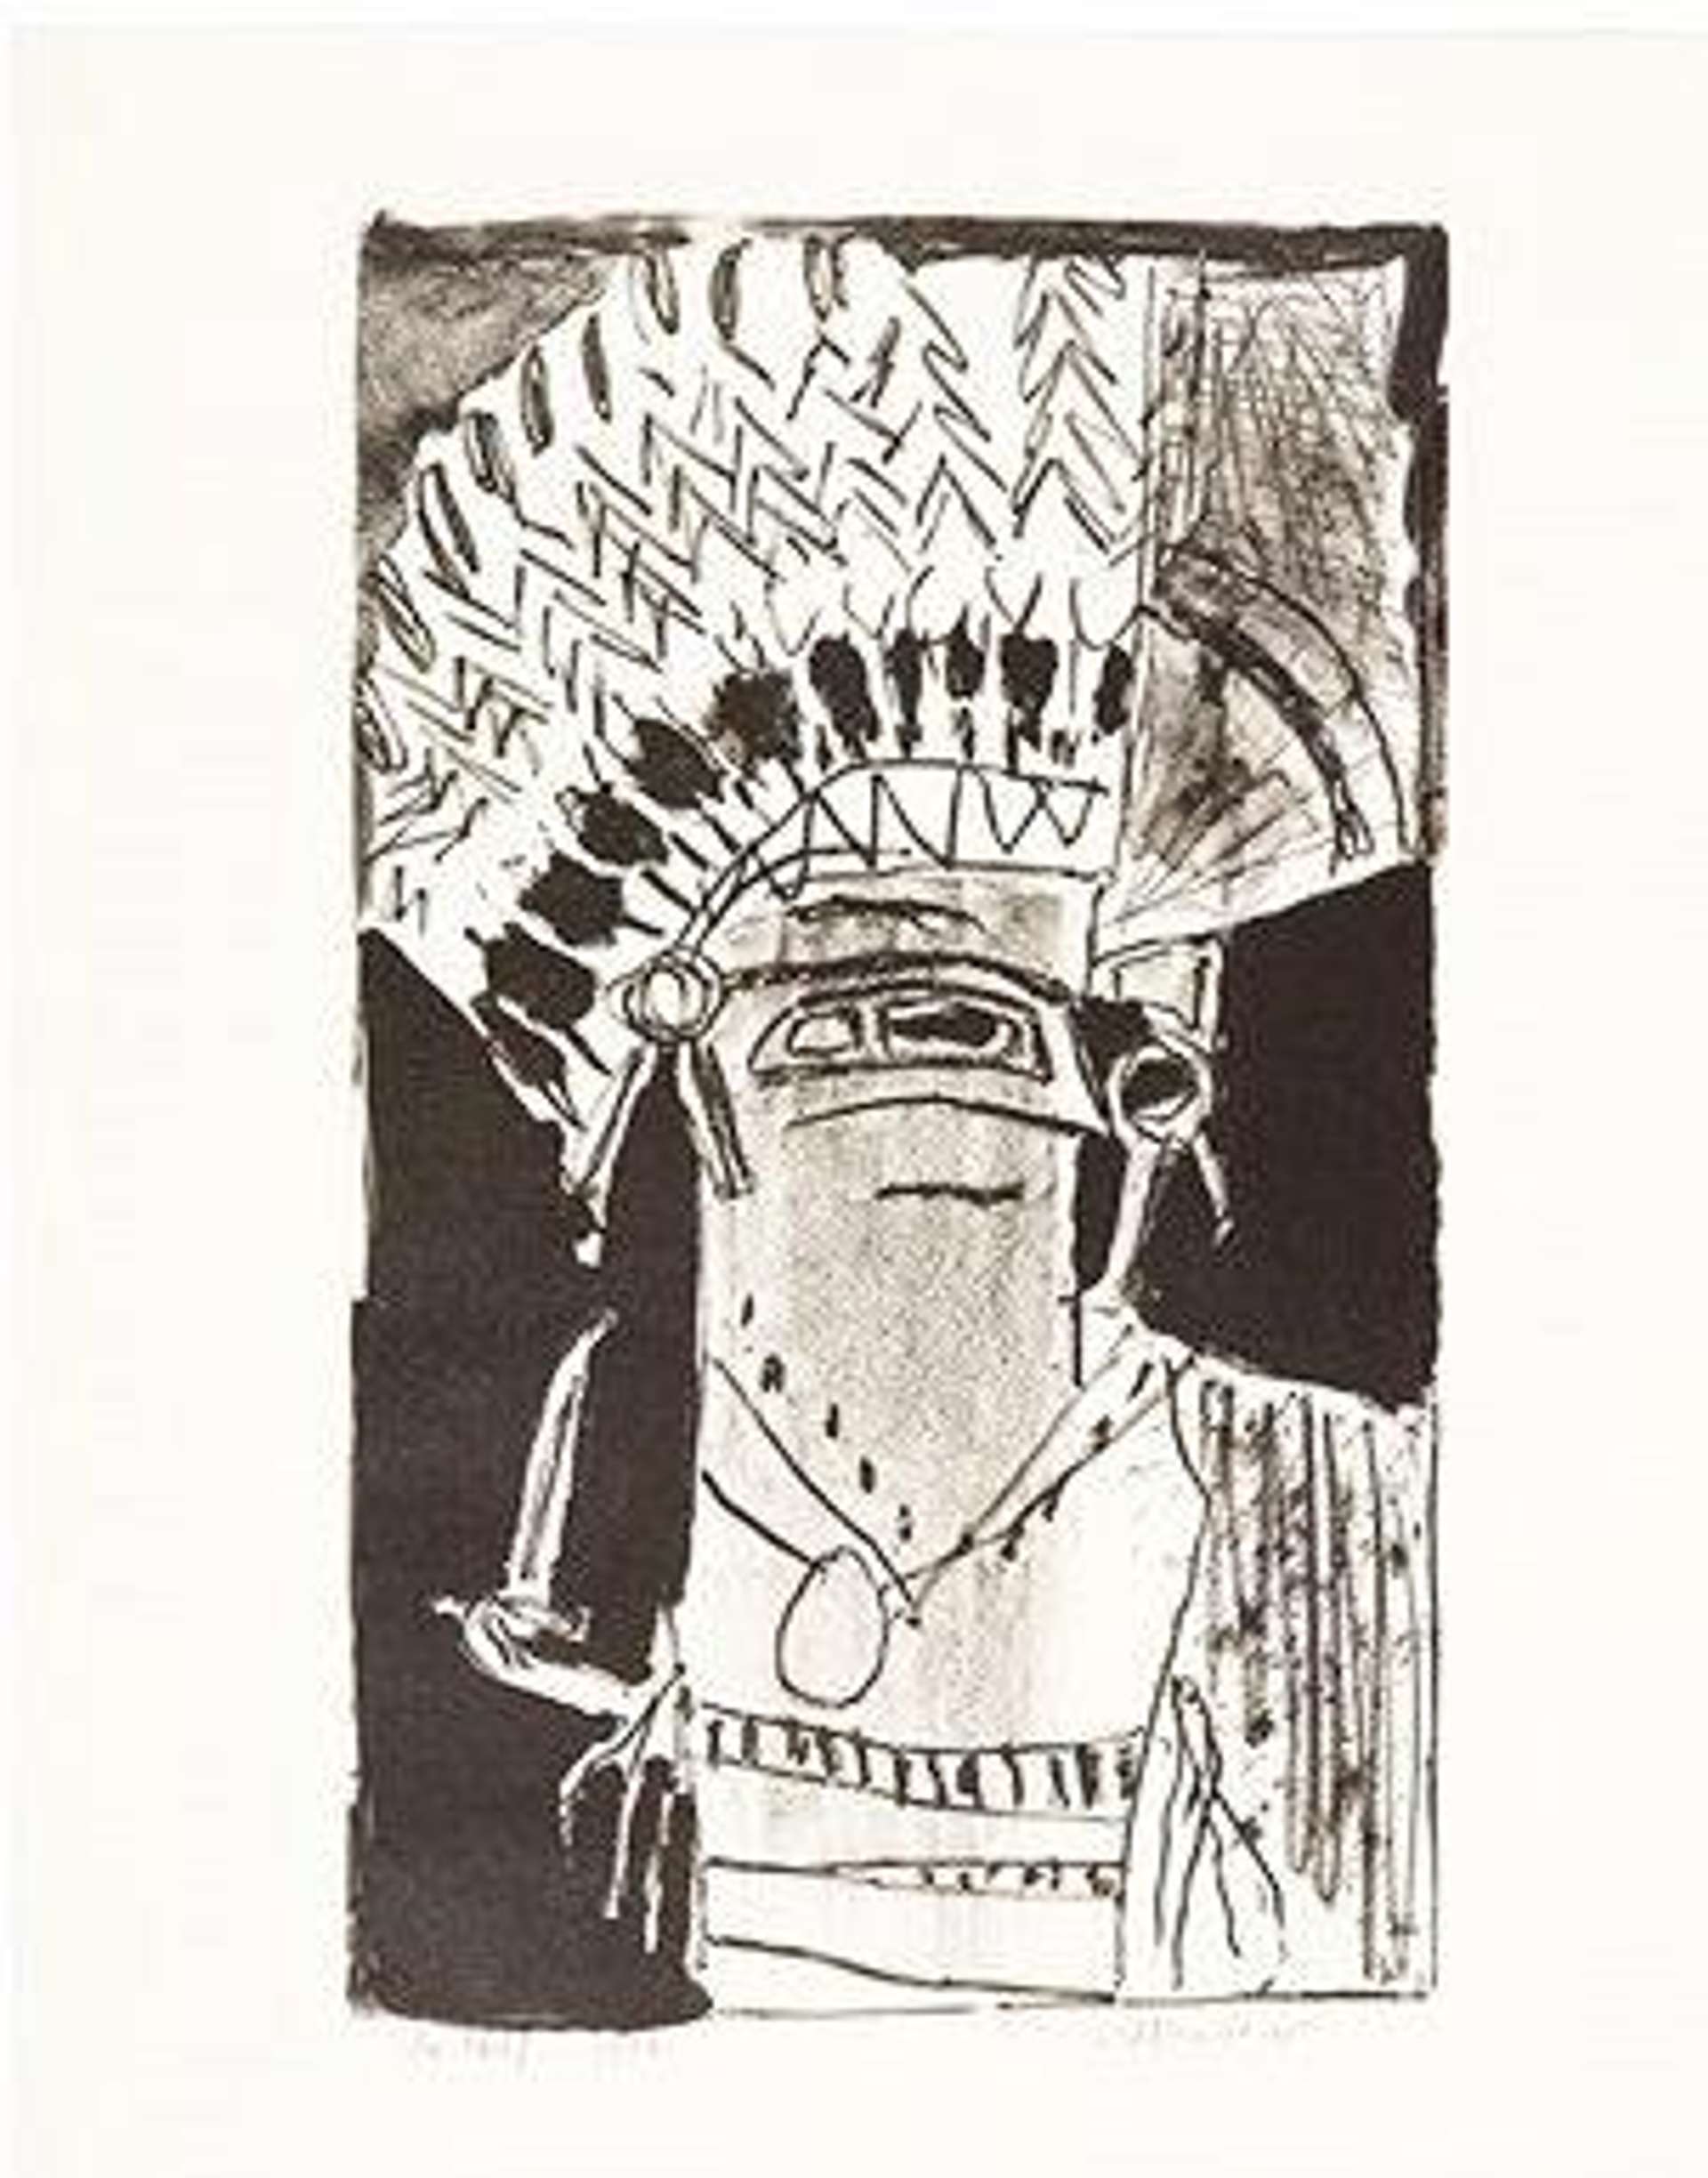 Roy Lichtenstein: The Chief - Signed Print